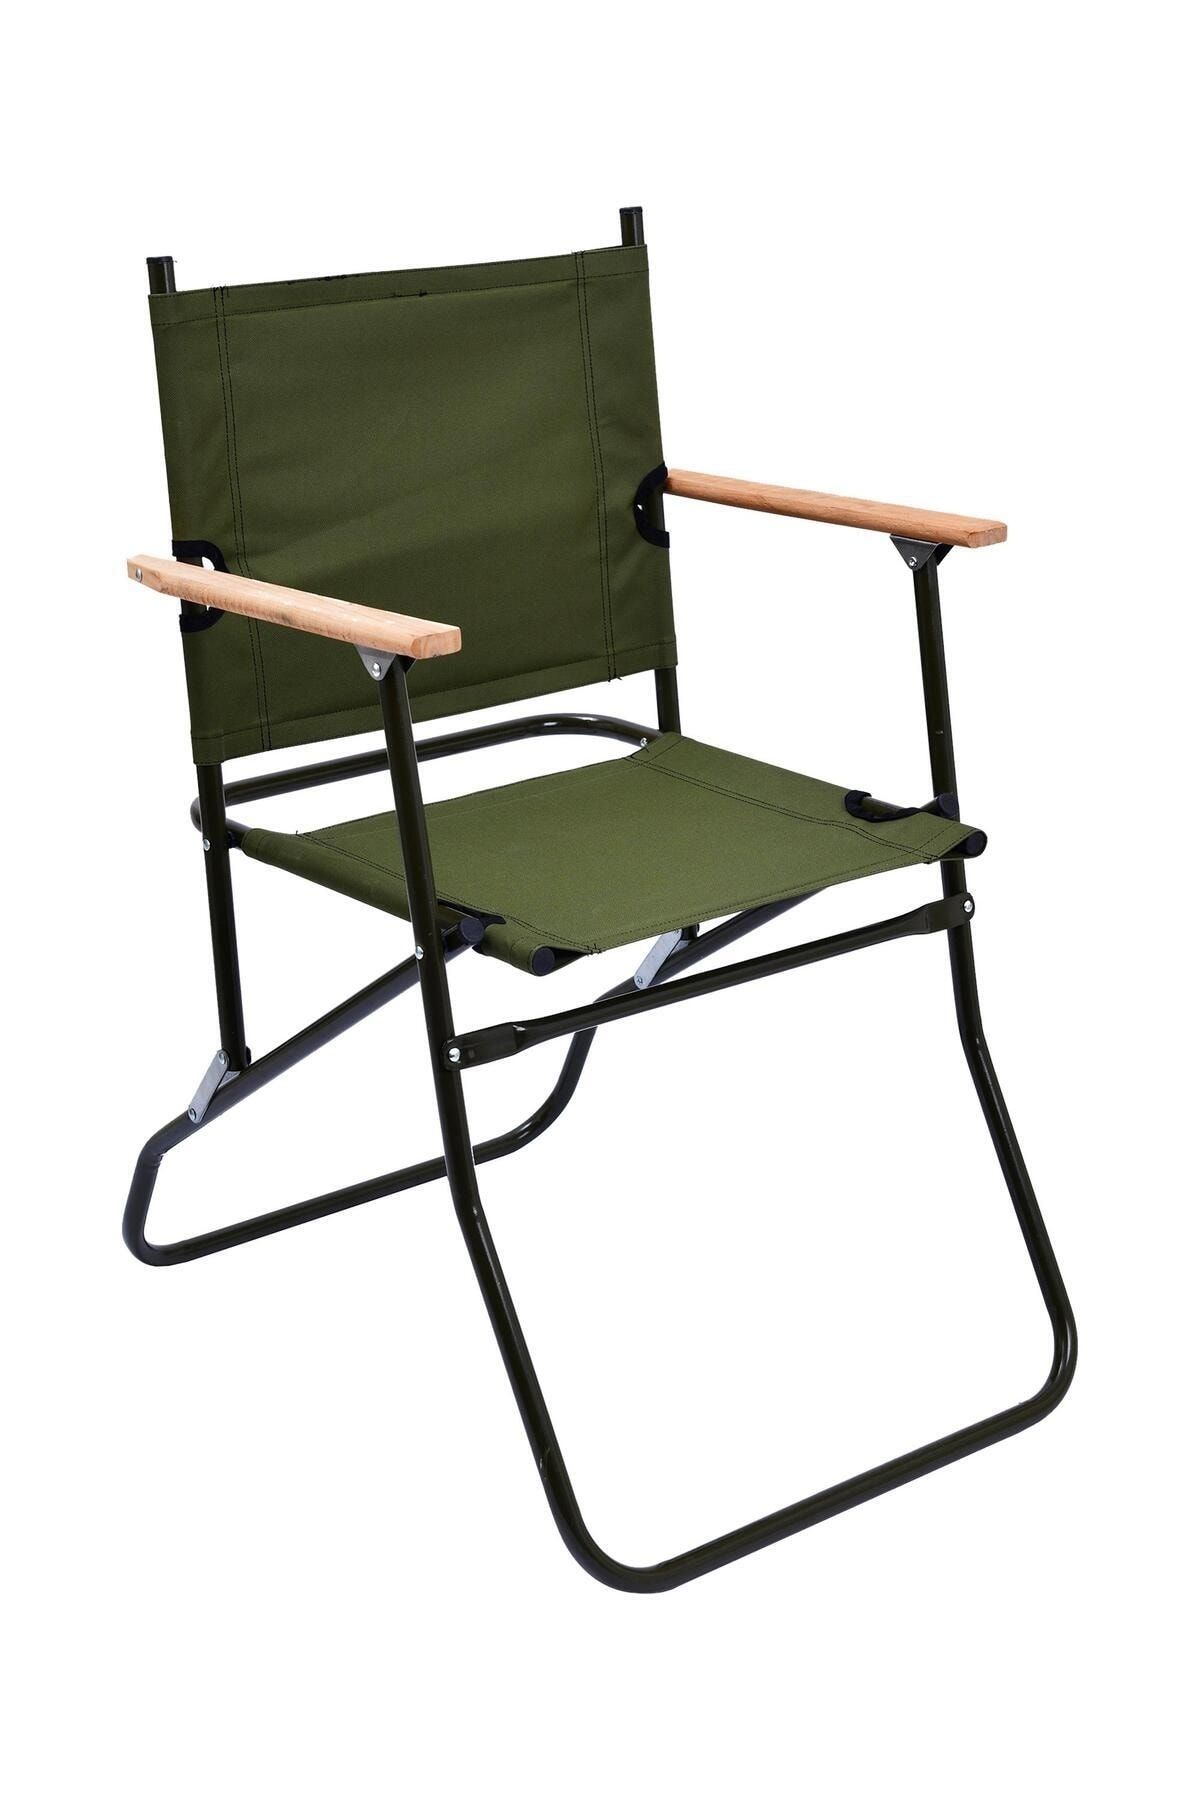 Exent Askeri Kamp Sandalyesi, katlanır kamp sandalyesi,